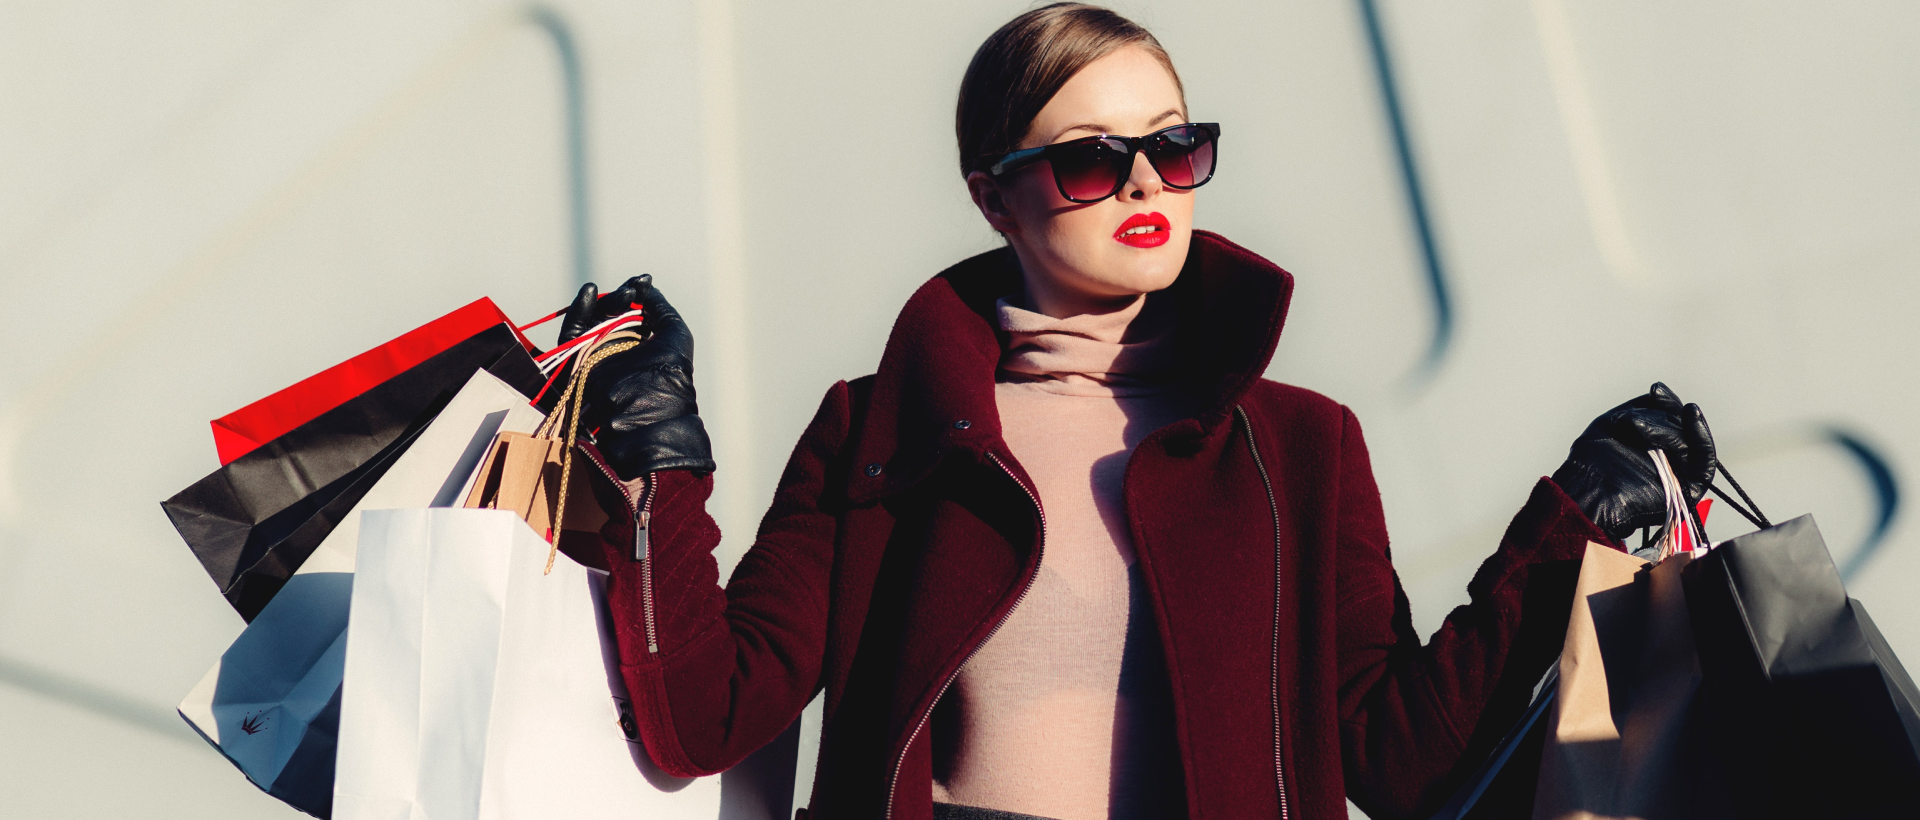 Frau mit Einkaufstaschen als Sinnbild für Shopping Funktionen auf Pinterest